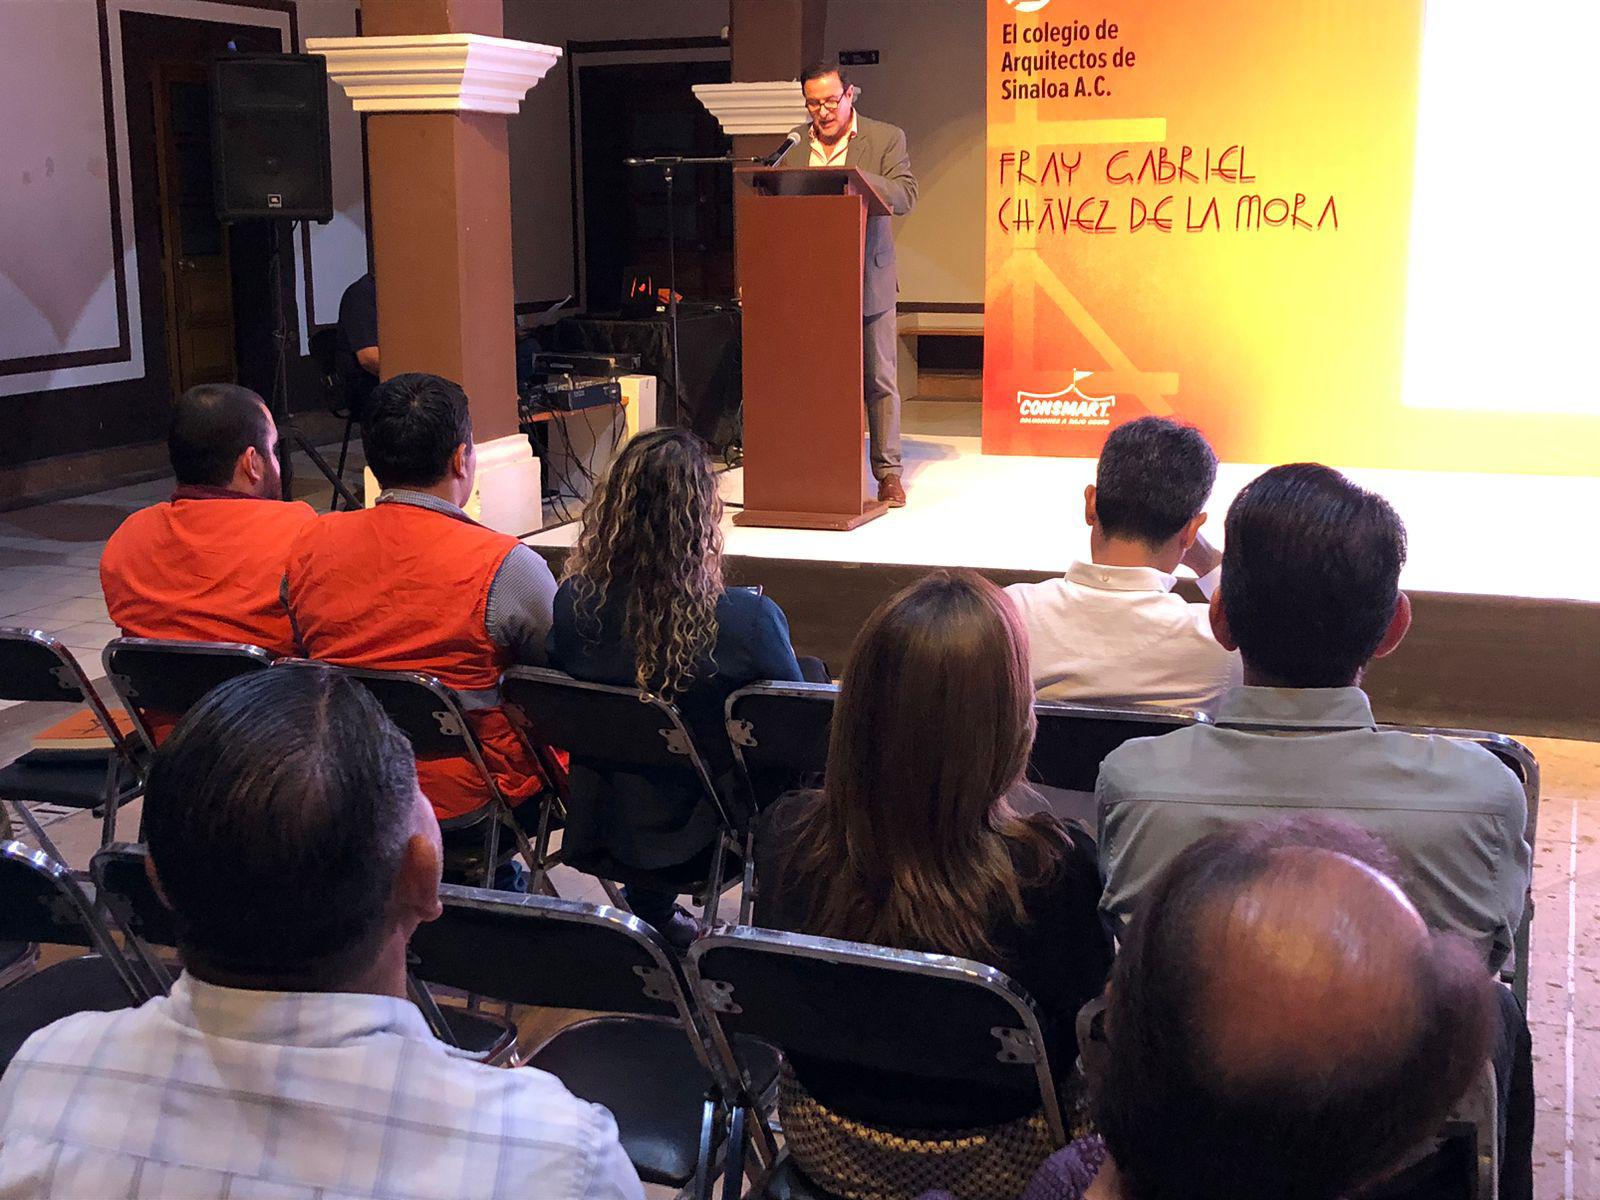 $!La conferencia se llevó a cabo en el Centro Sinaloa de las Artes Centenario.